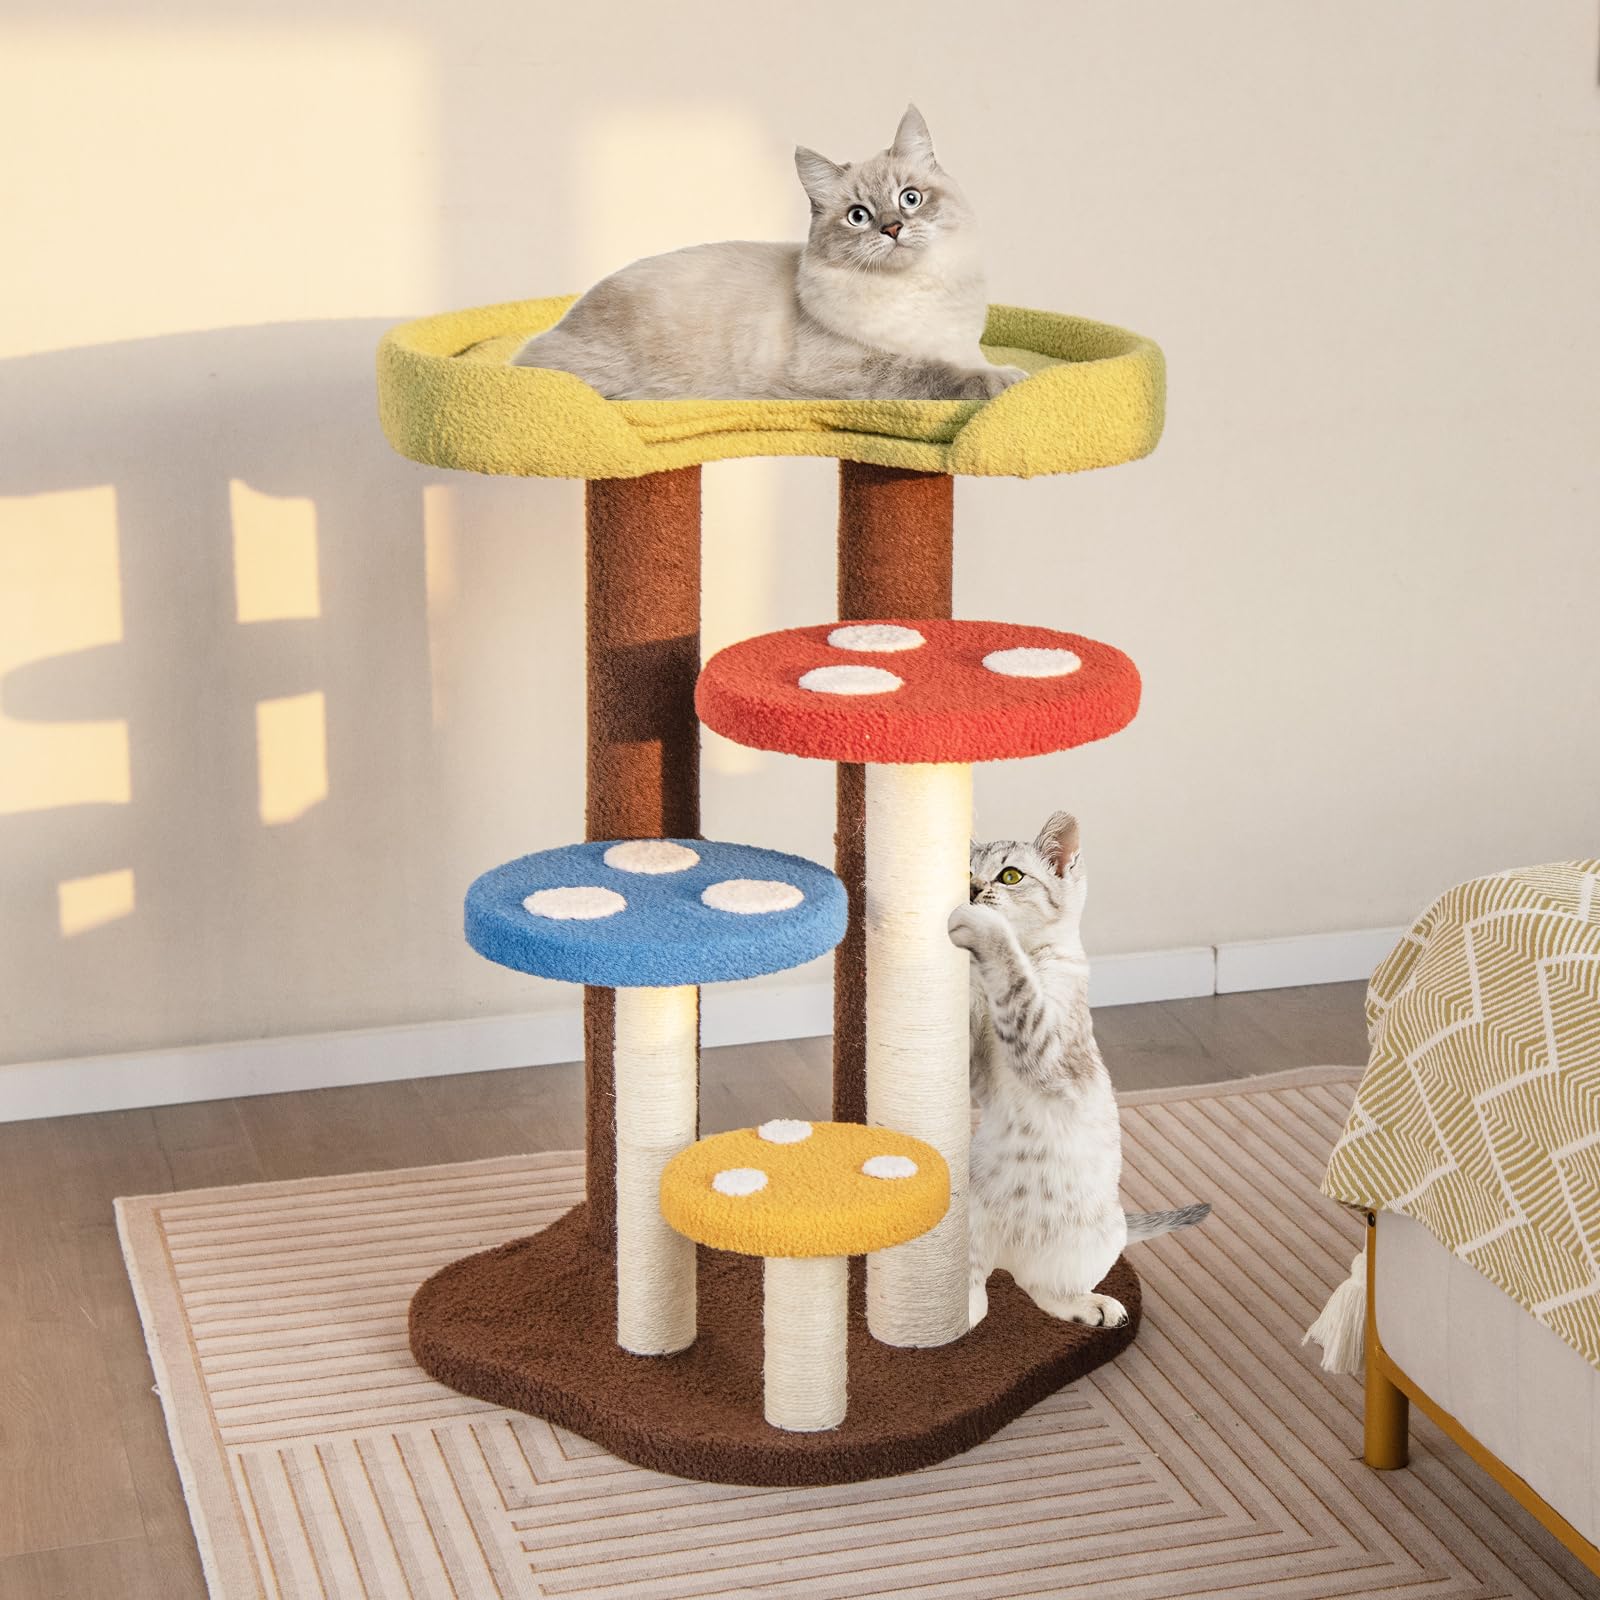 Giantex Cute Cat Tree - 37 Inches Mushroom Cat Tower